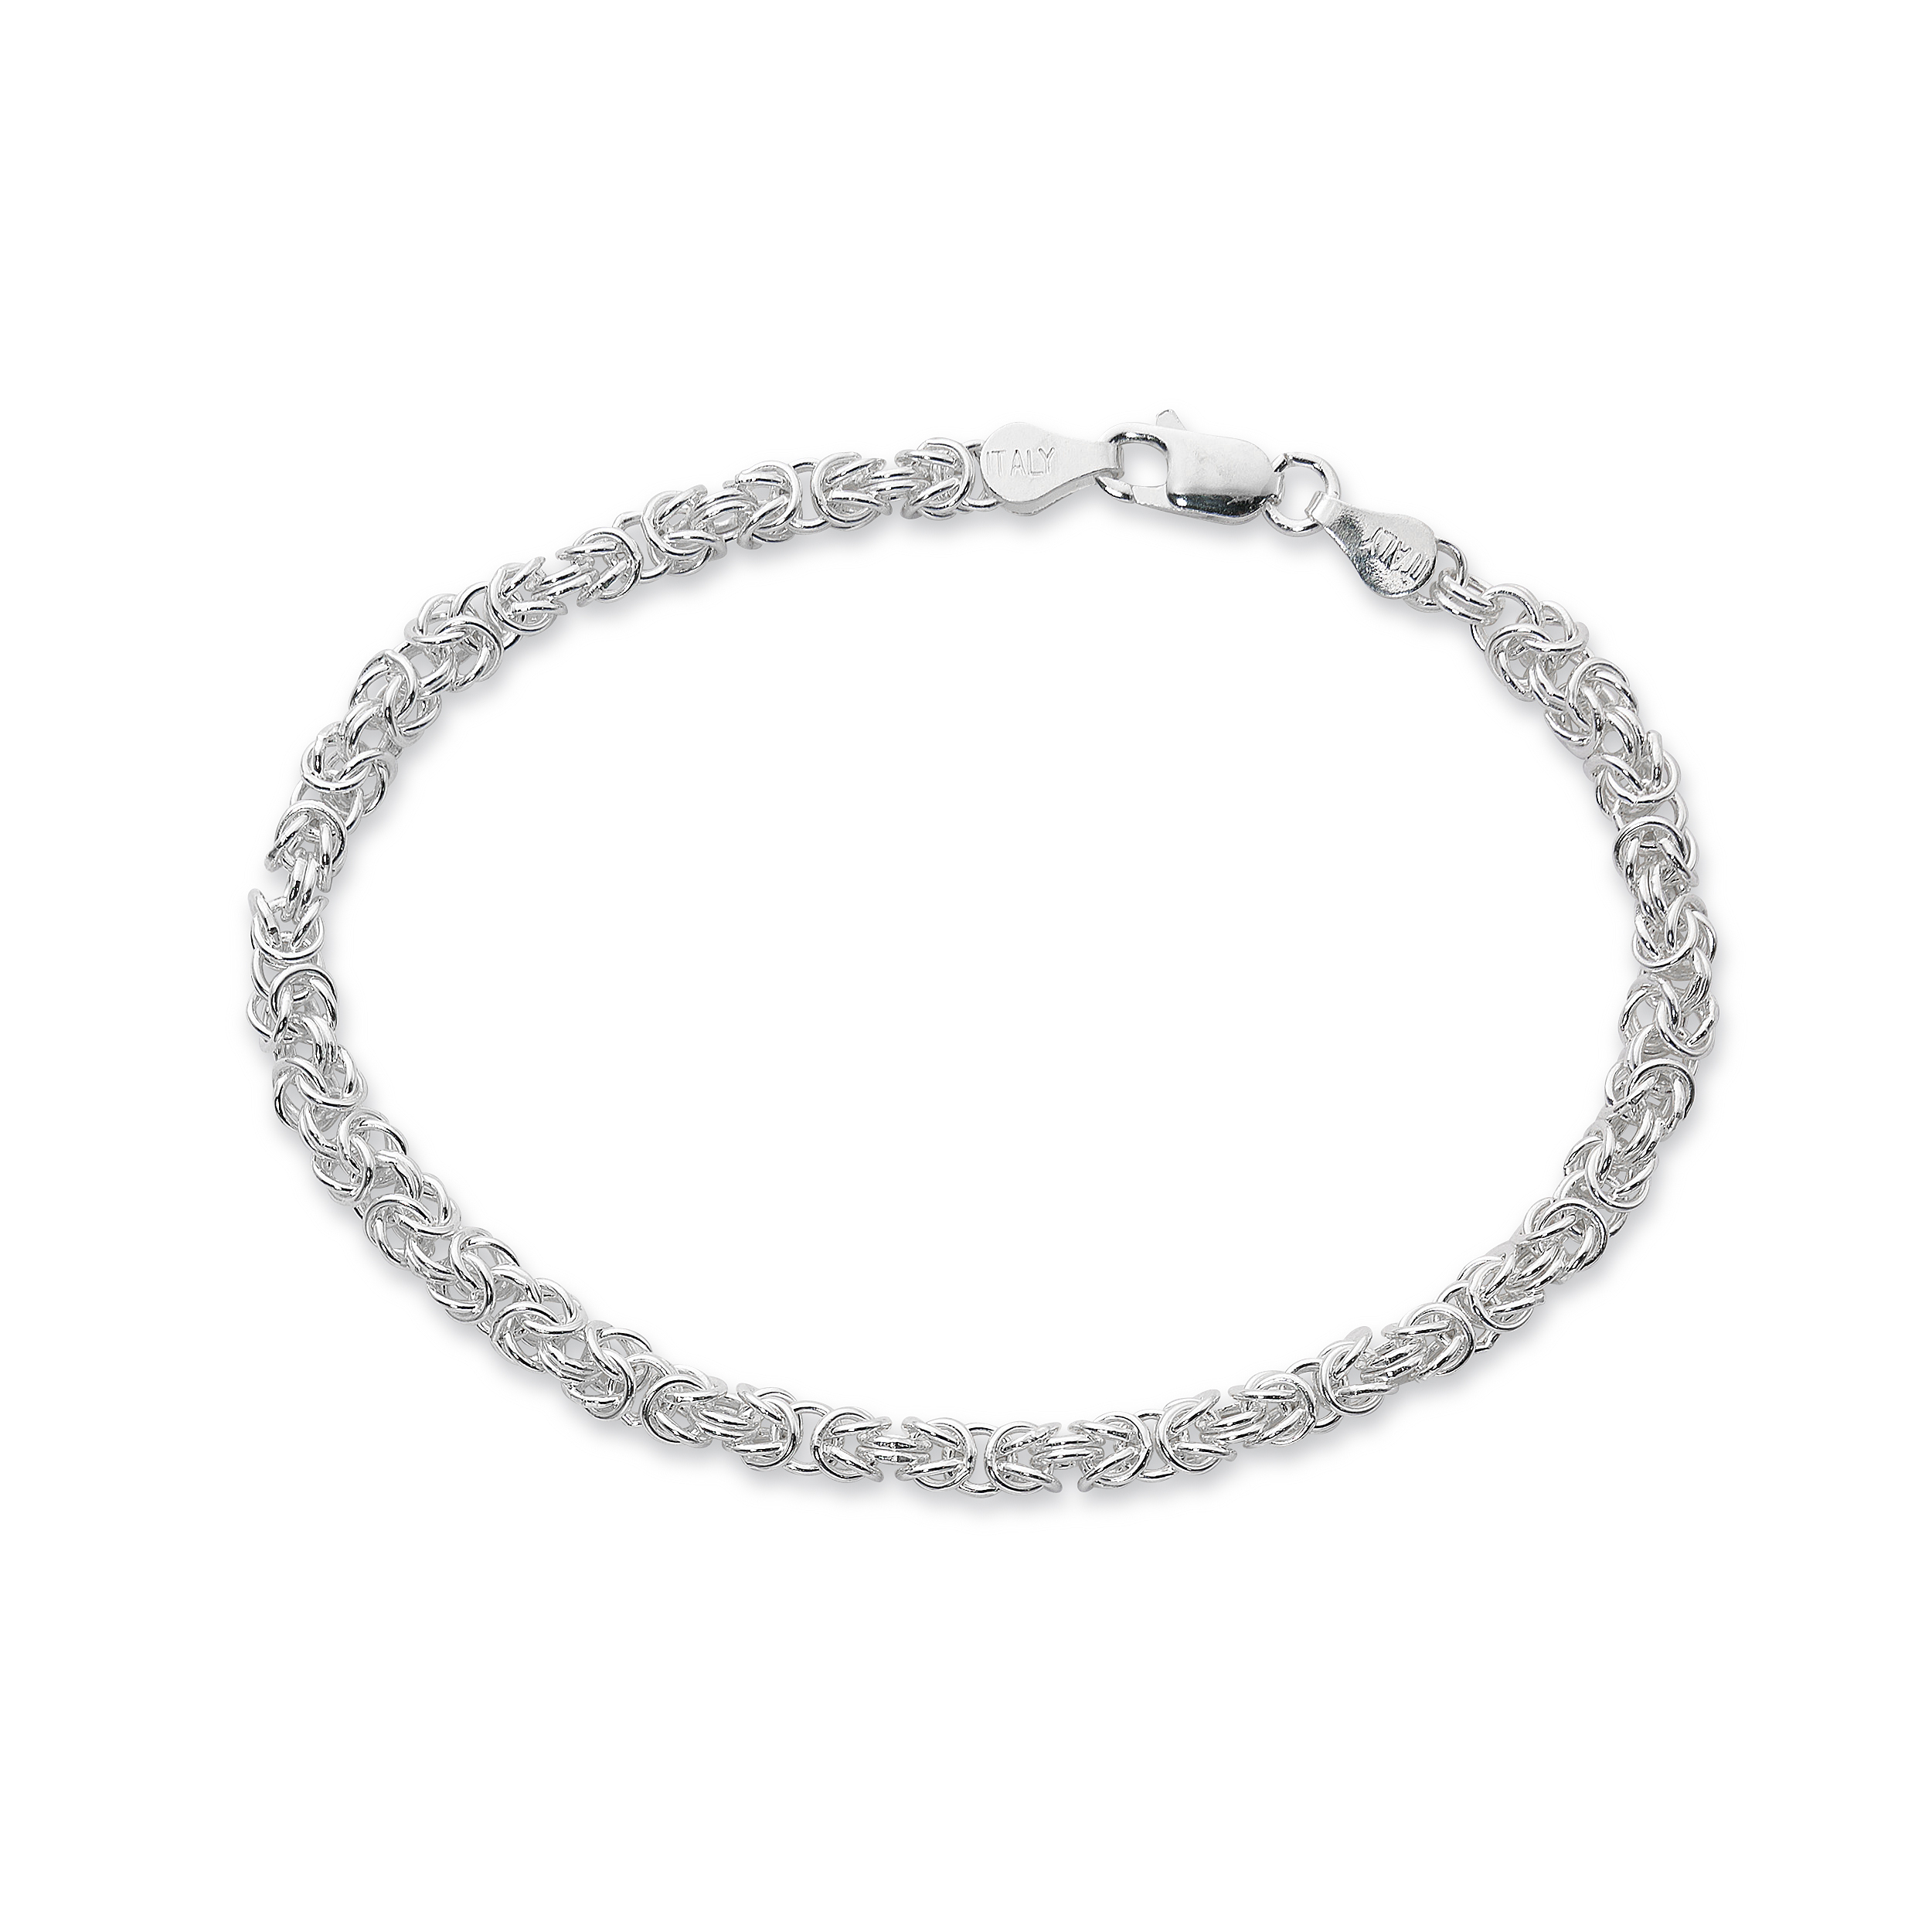 Primavera Pure 100 Silver Multi Woven 7 1/2 inch Chain Bracelet